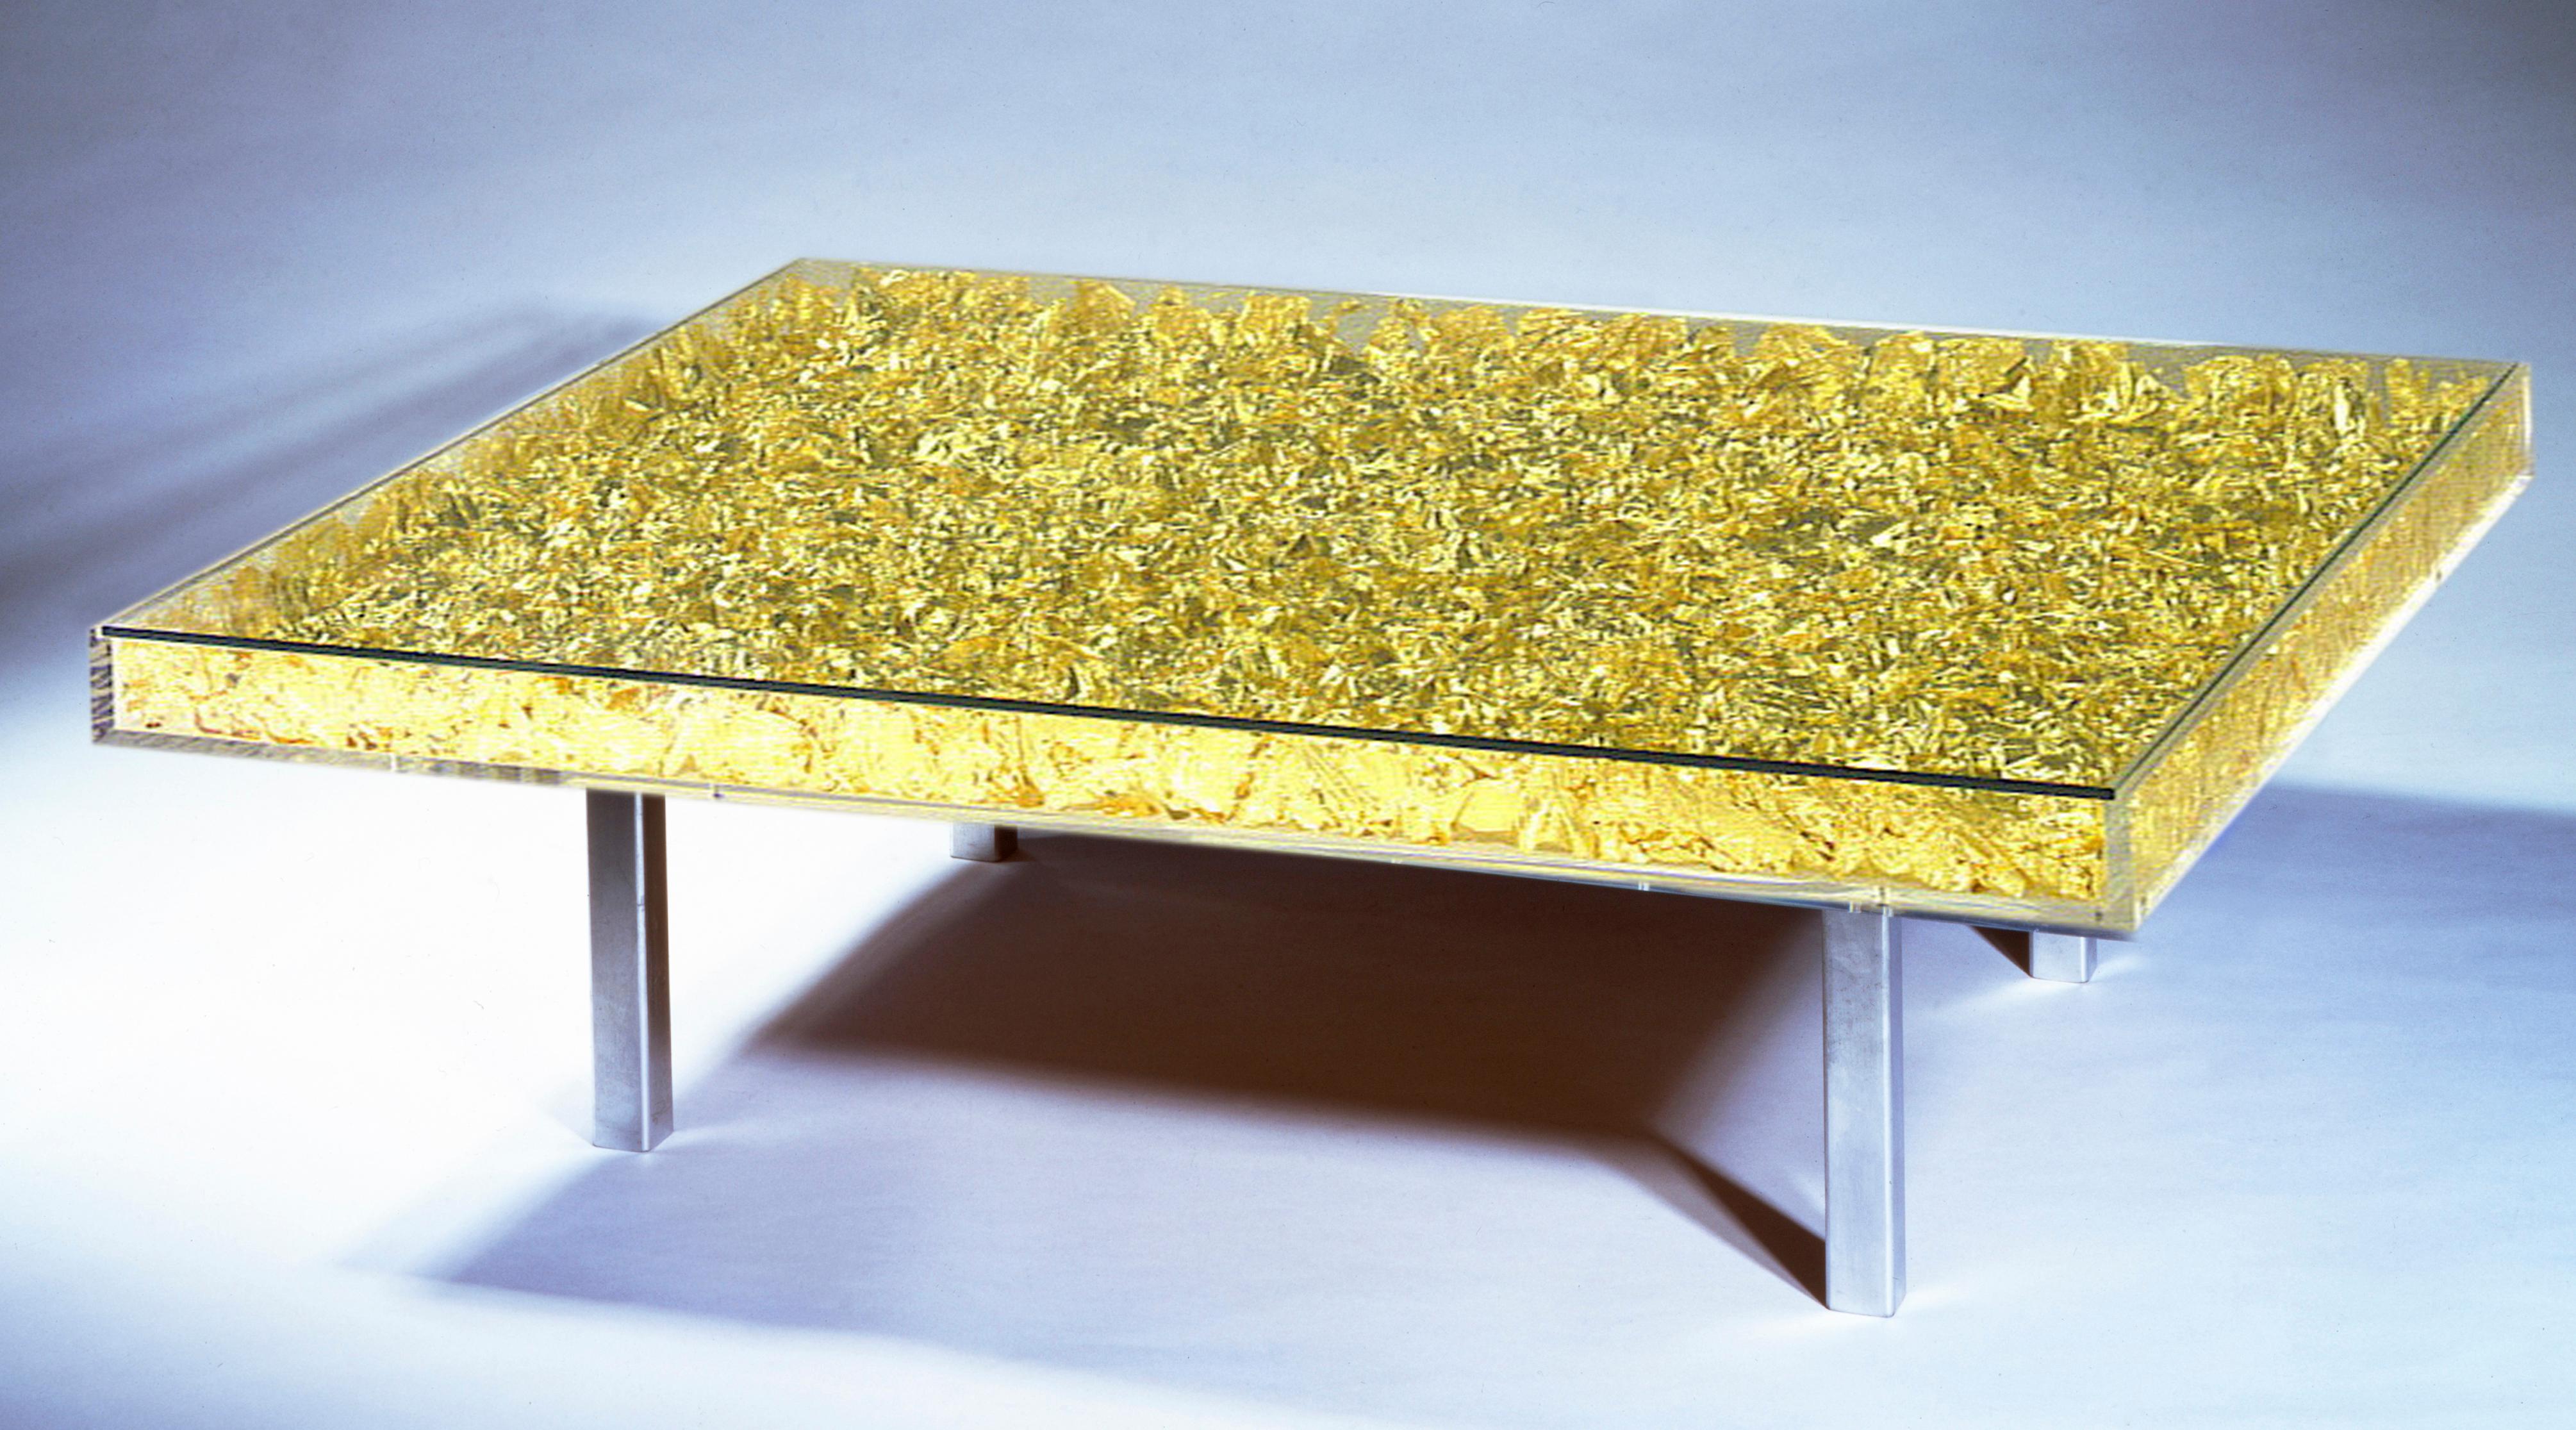 Yves Klein, Monogold Couchtisch.
Glas, Plexiglas, Metall und Blattgold.
Signiert R. Klein Moquay und nummeriert auf einem Etikett, das an der Unterseite des Tisches angebracht ist.
Dieses Werk stammt aus einer 1963 unter der Leitung von Rotraut